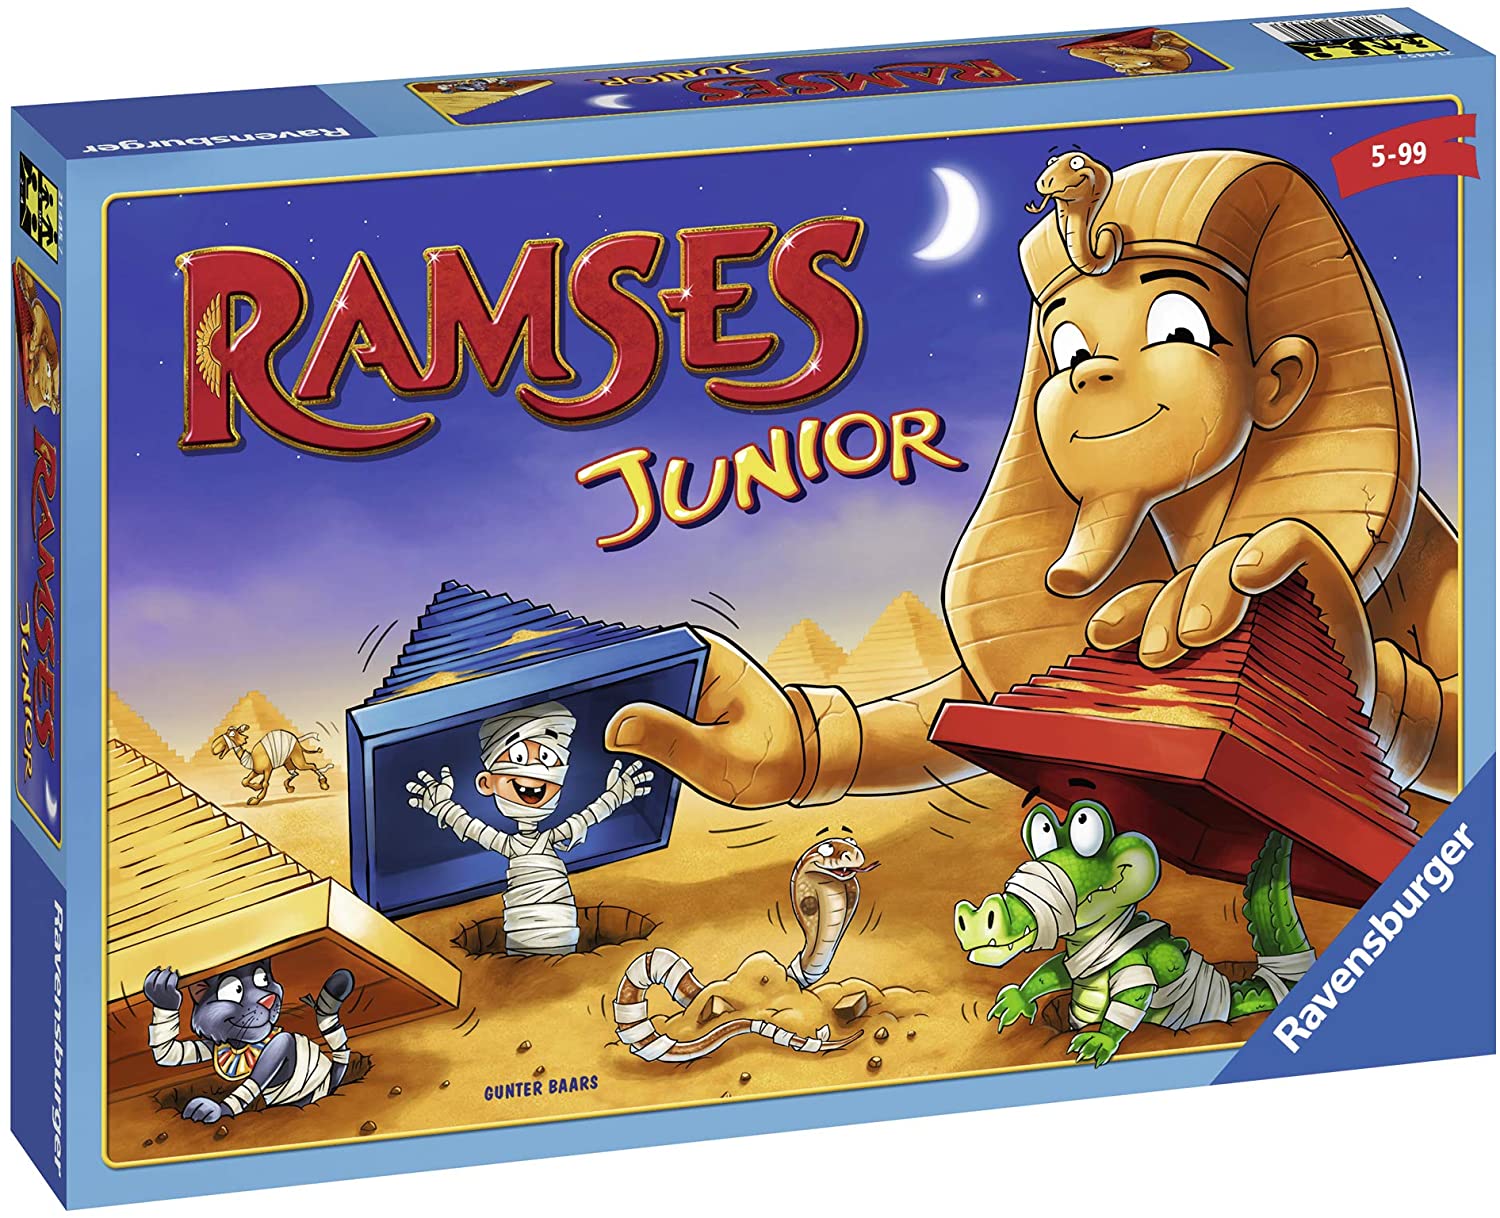 Ramsès Junior